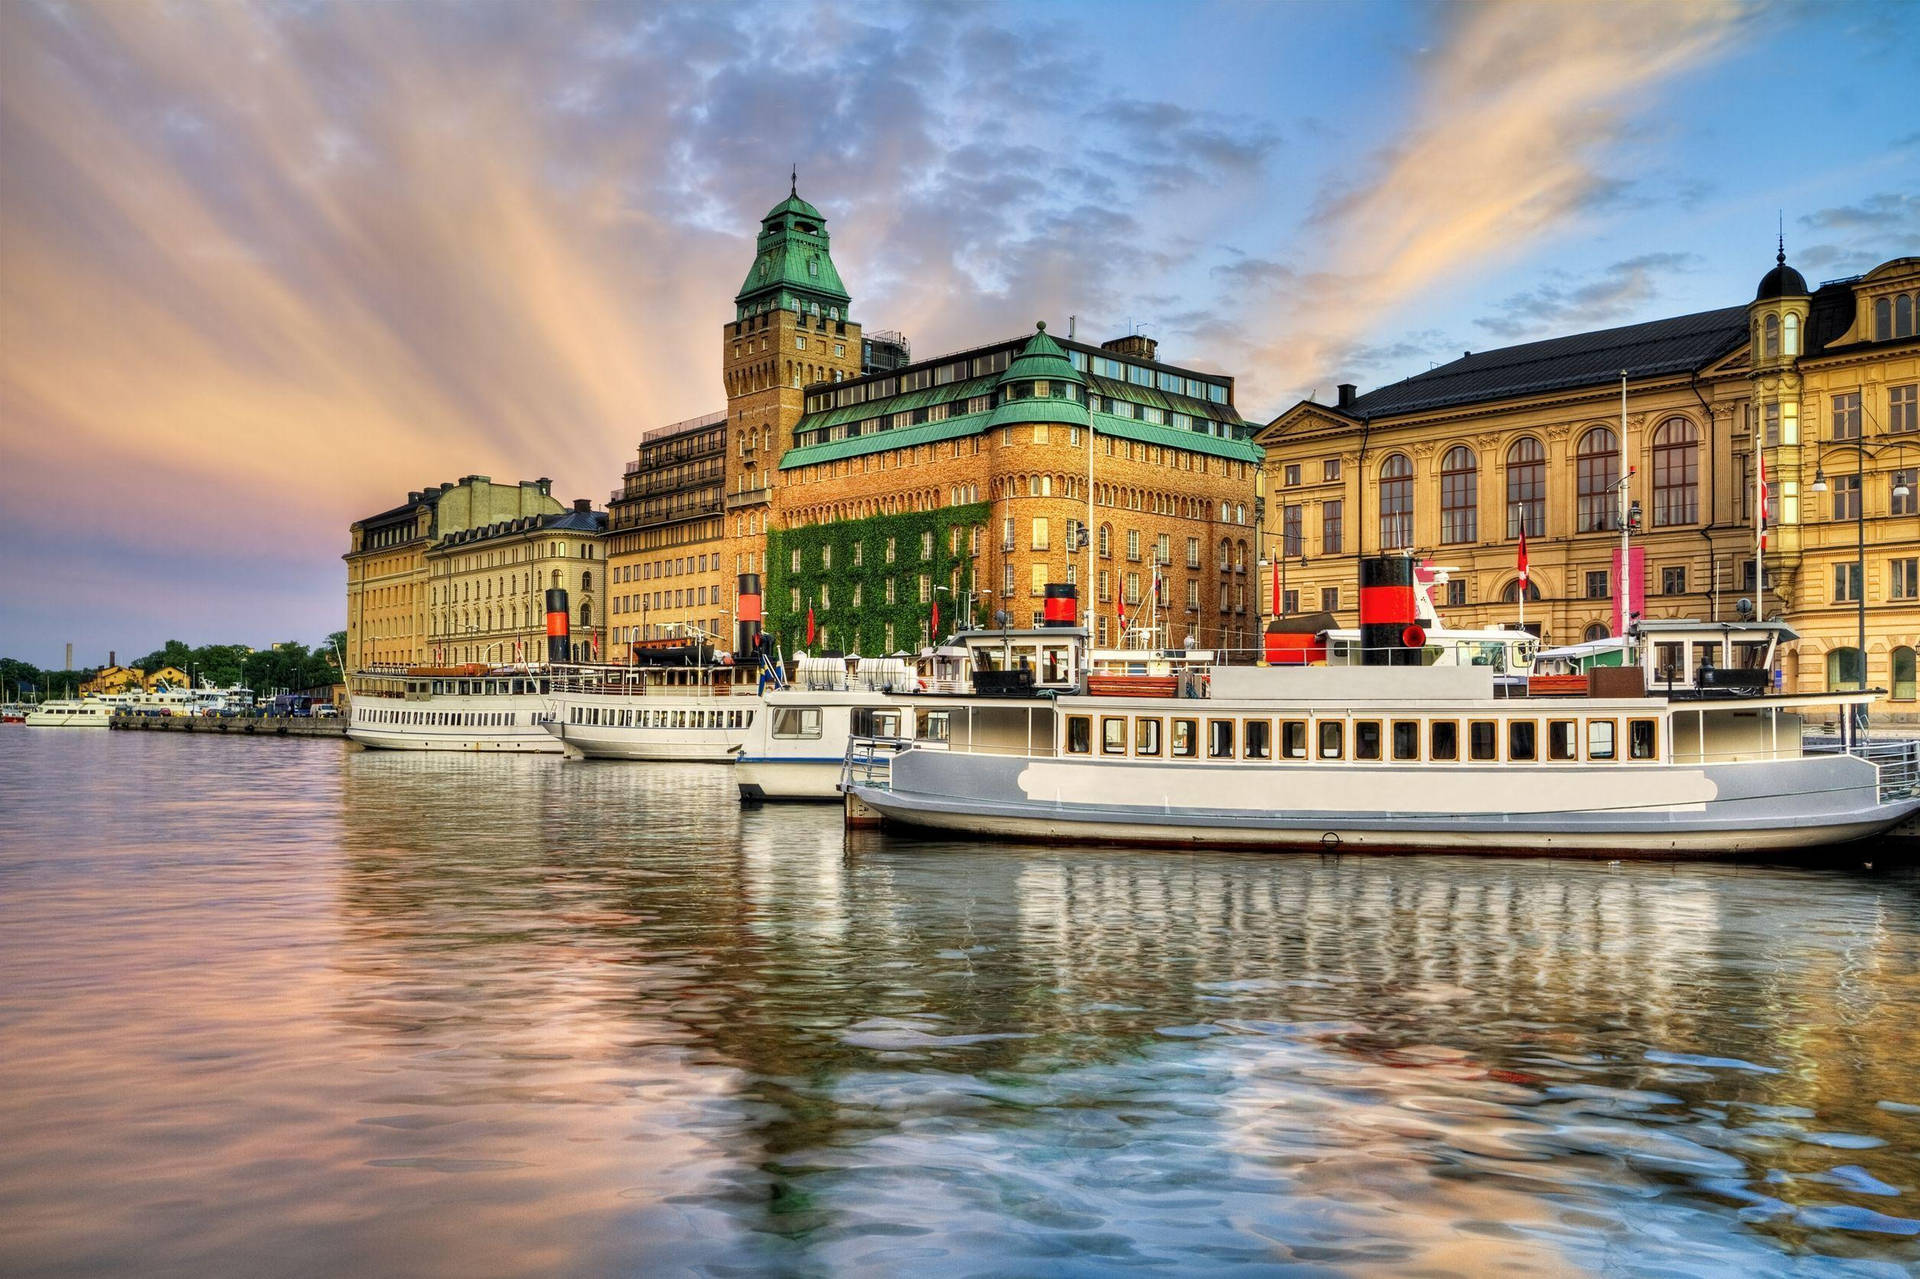 Booteliegen Am Stockholmer Wasserufer Vor Anker. Wallpaper